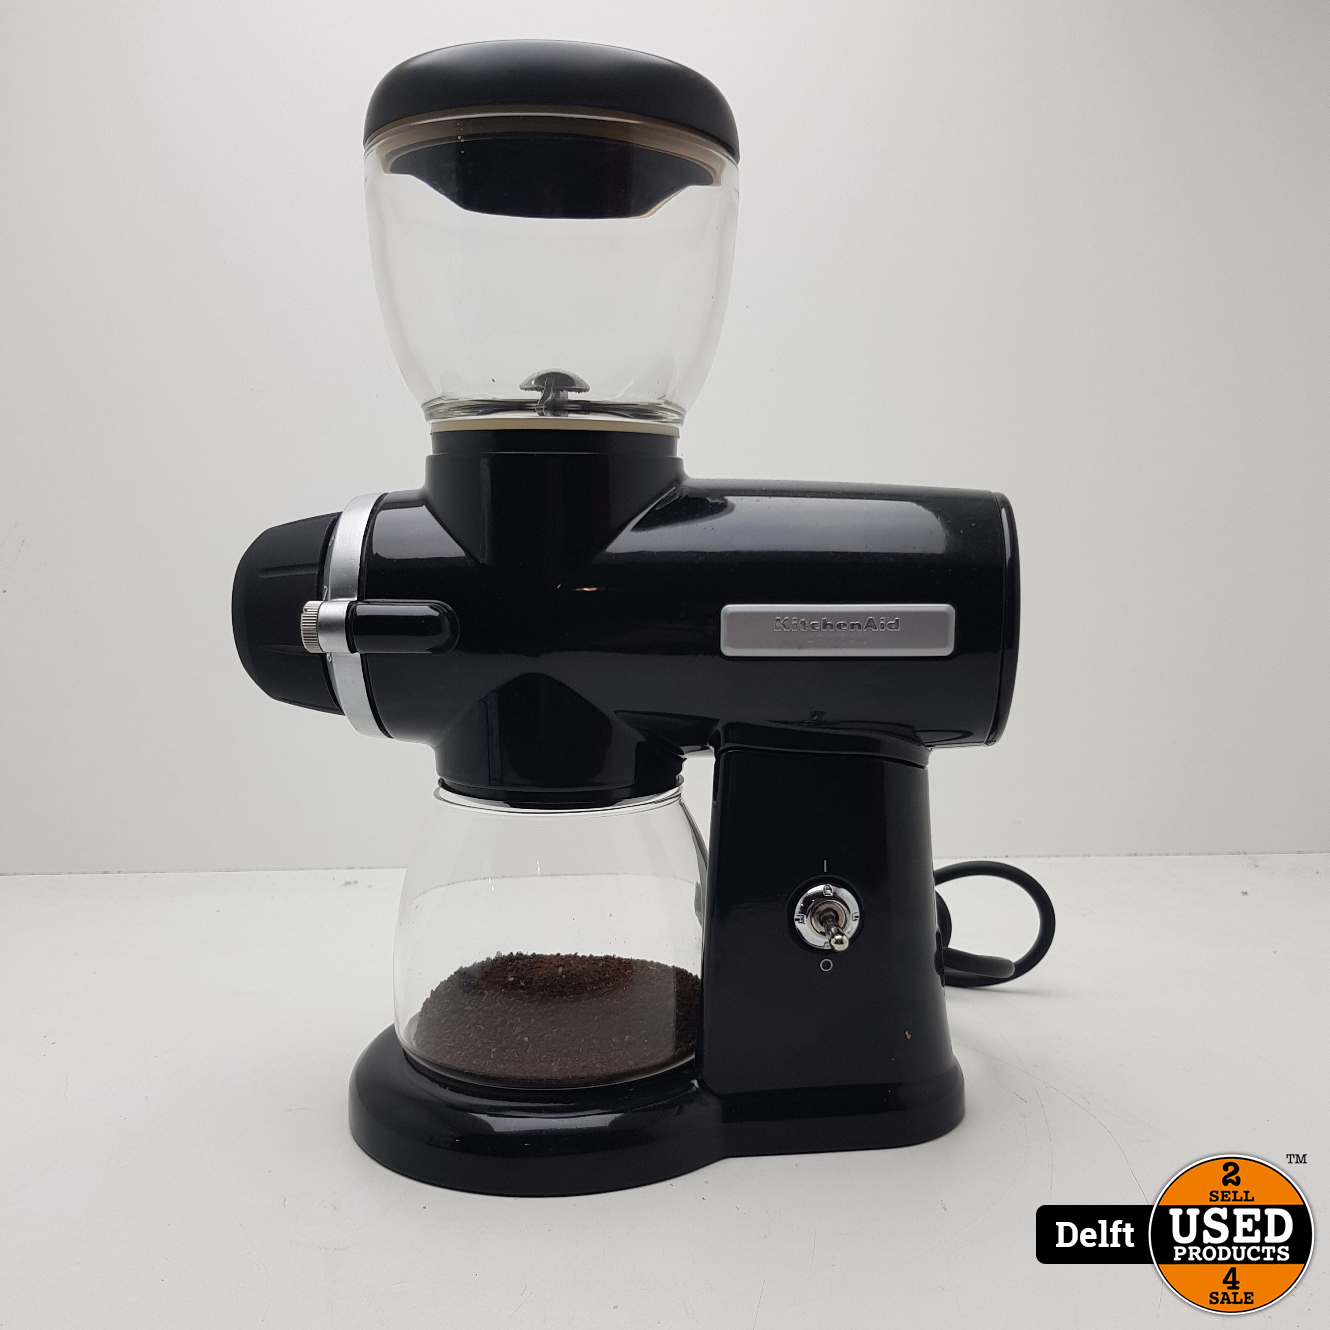 Kitchenaid KCG0702 Koffiemolen Onyx Black zeer nette staat garantie Used Products Delft